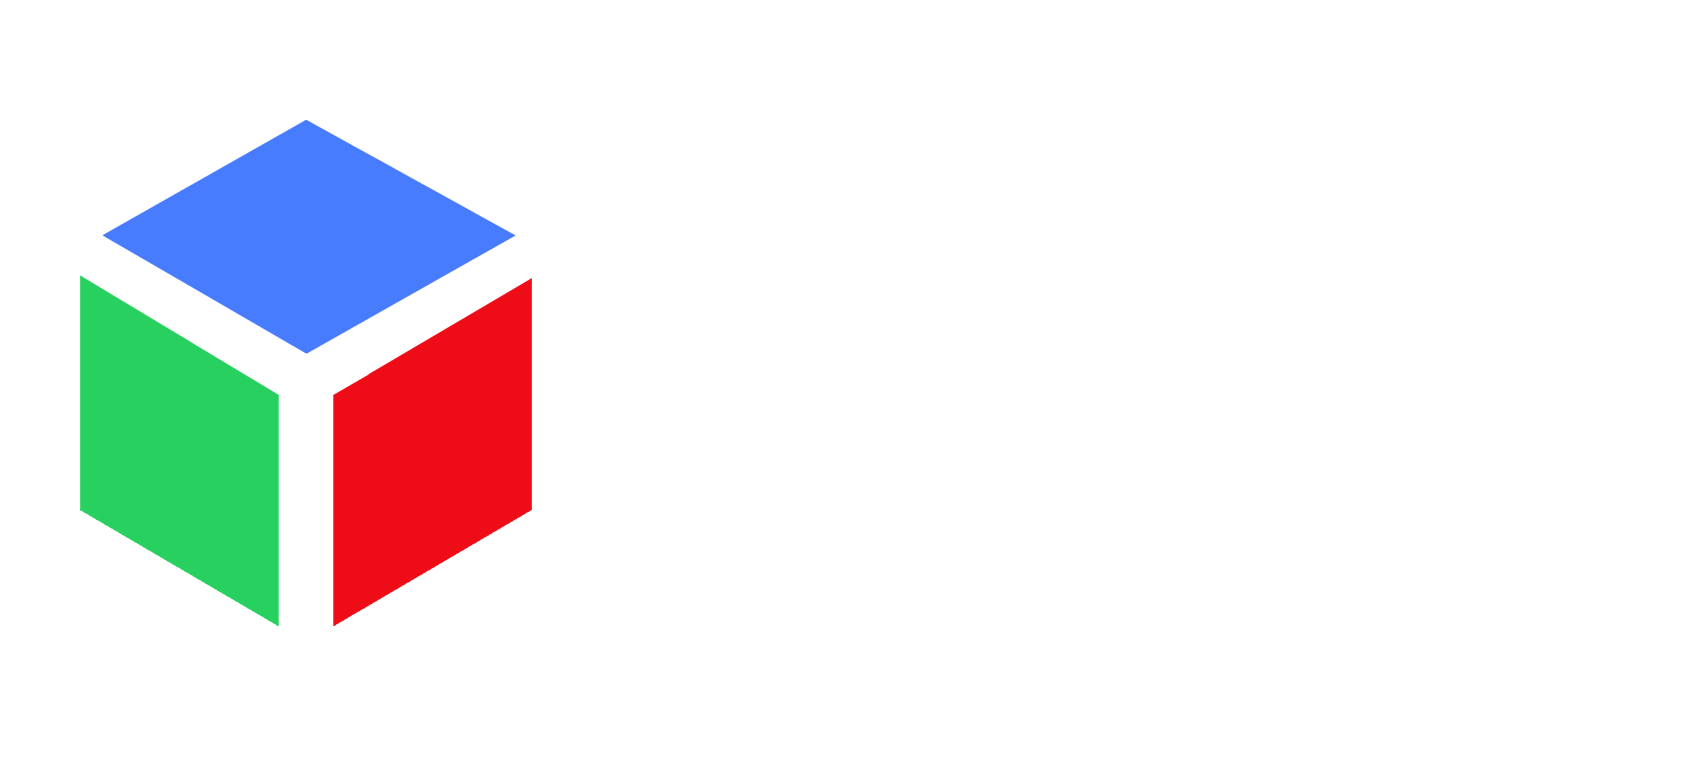 APPEX Online: Low-code - Enterprise Application Development Platform